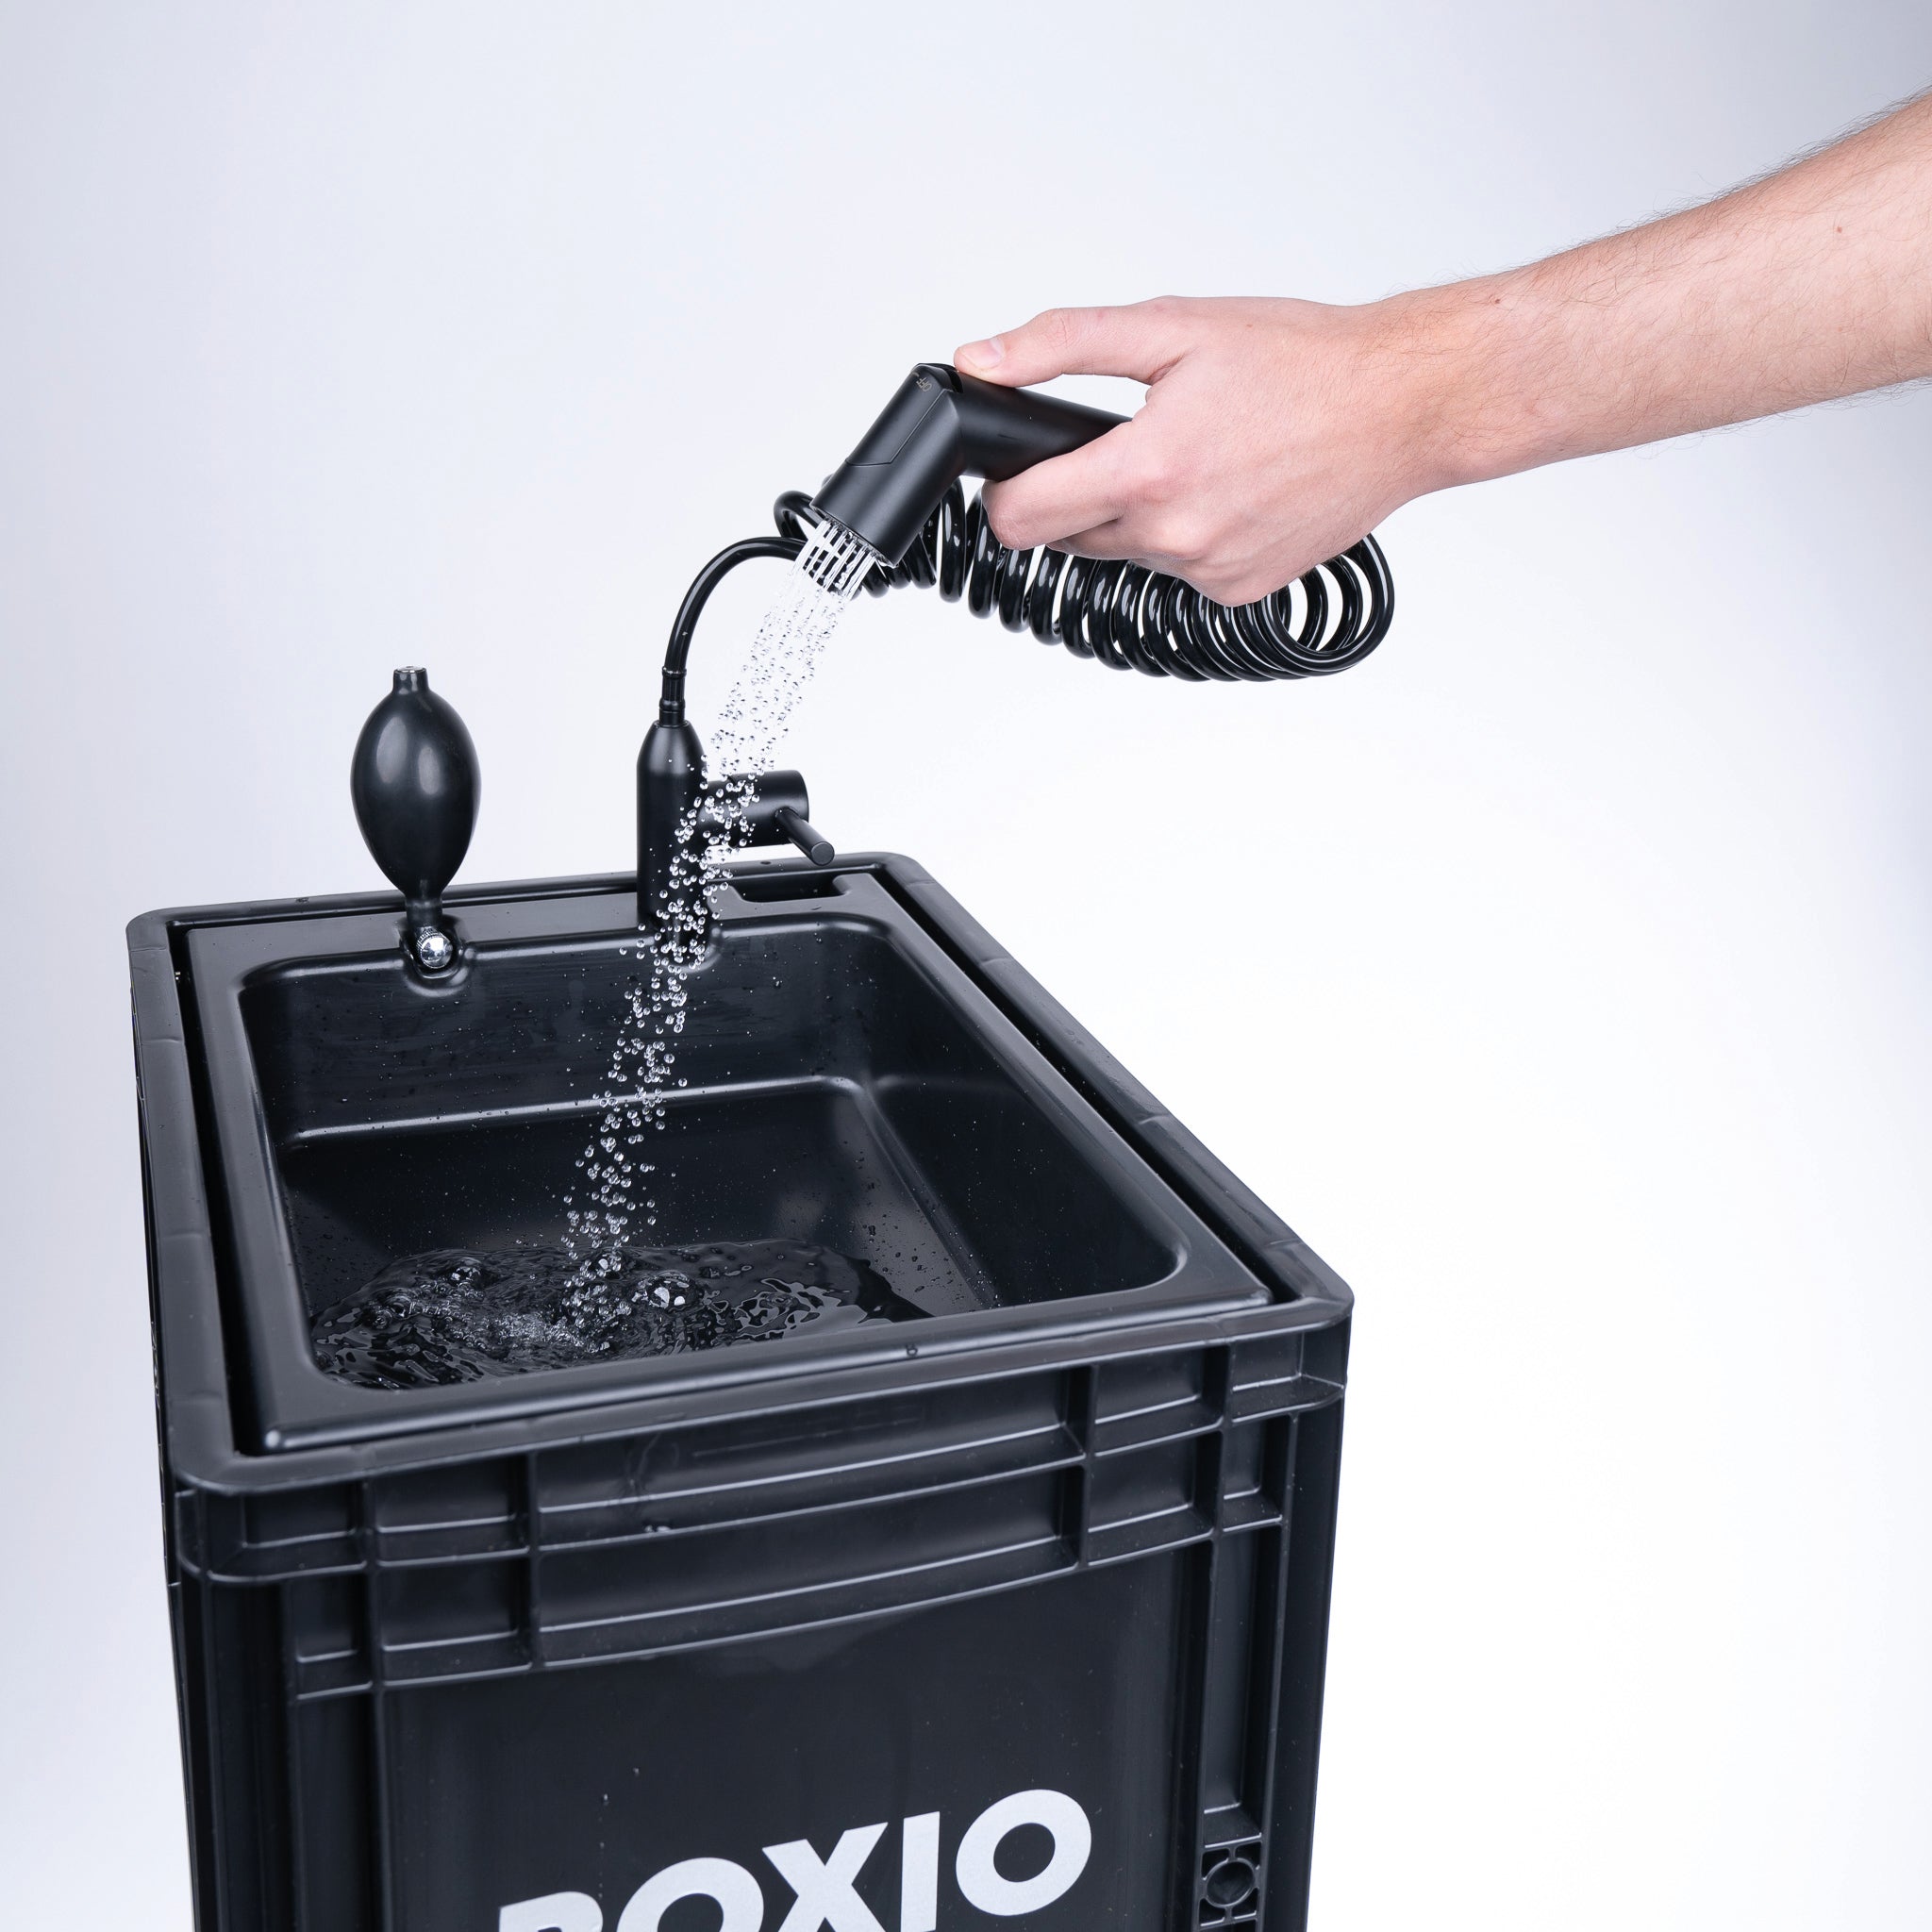 BOXIO - WASH  Mobiles waschbecken, Waschbecken, Waschbecken kaufen